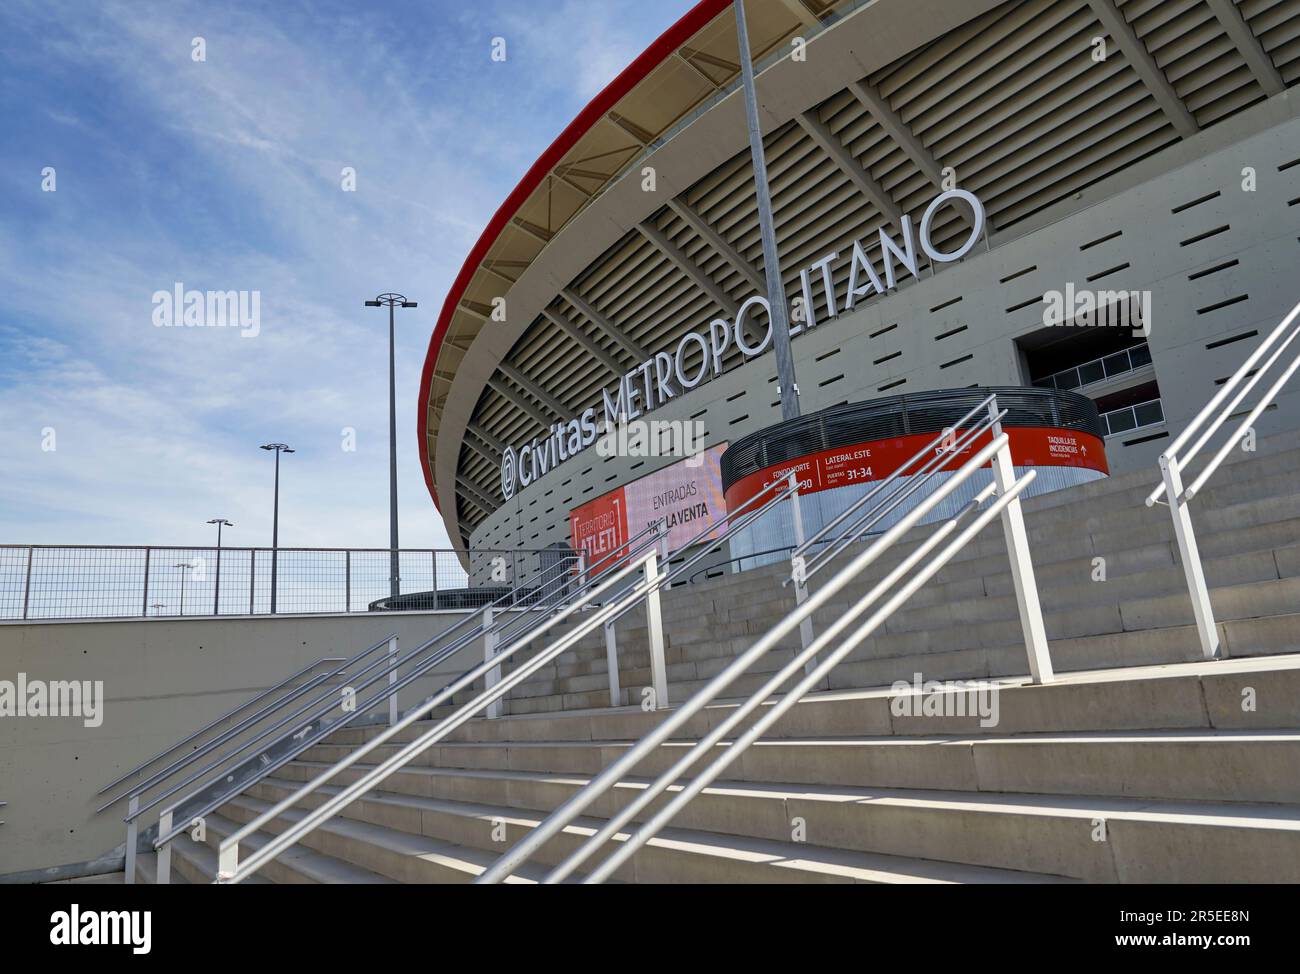 Vista sulla moderna arena Civitas Metropolitano - la sede ufficiale del FC Atletico Madrid Foto Stock